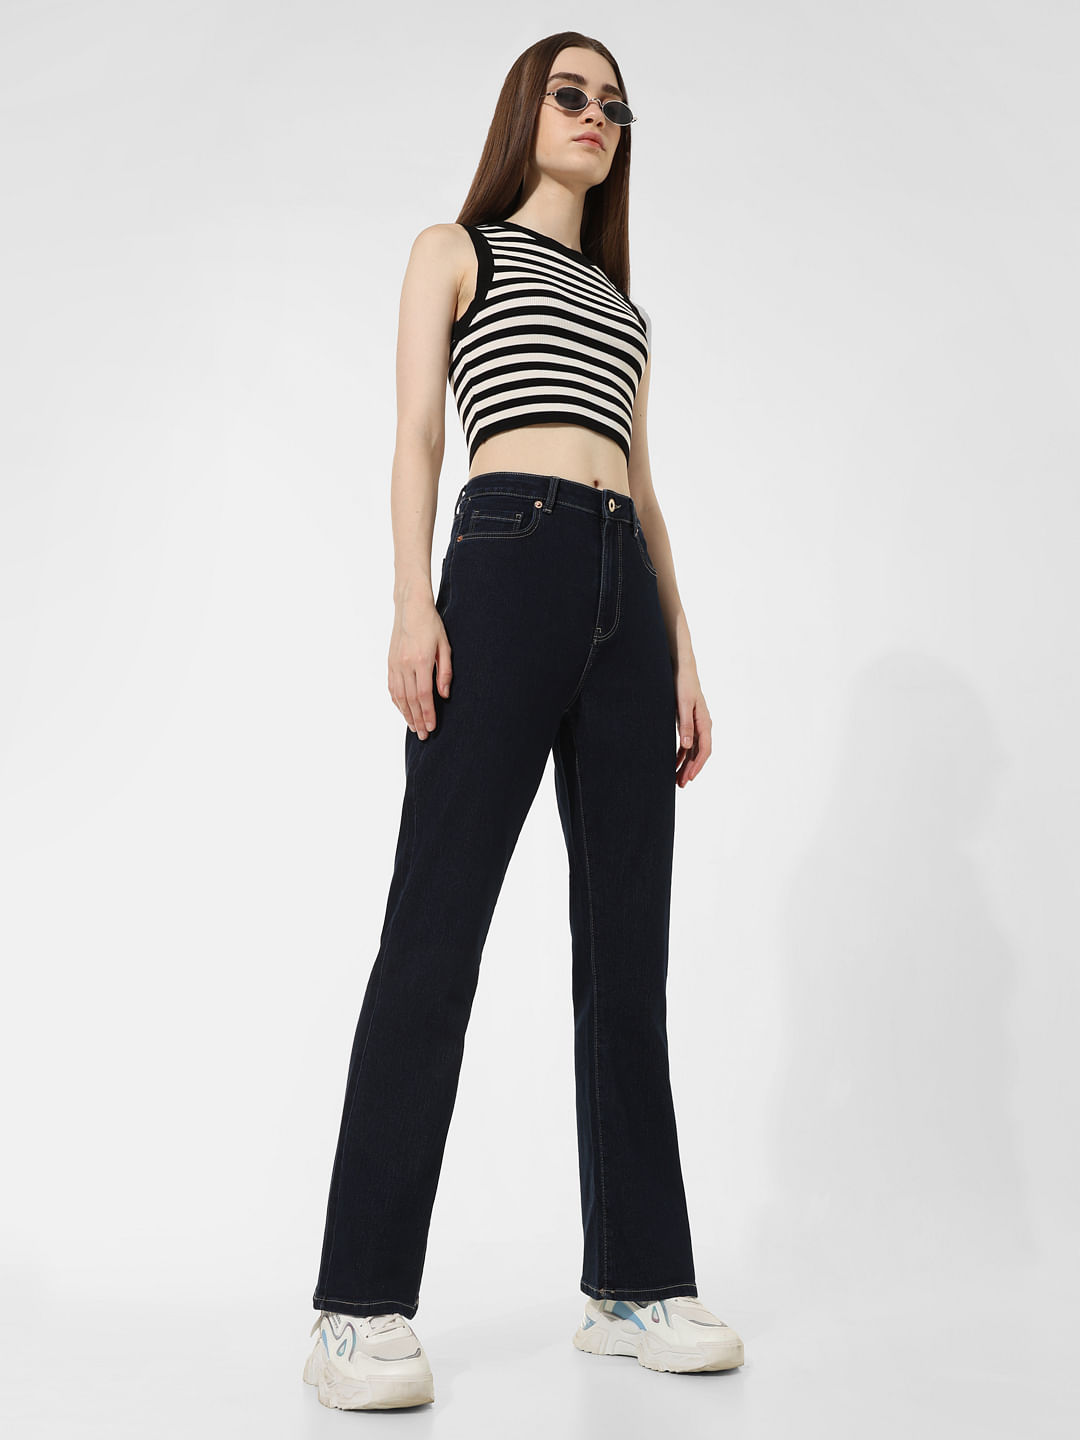 Buy Beige Trousers & Pants for Women by POPWINGS Online | Ajio.com